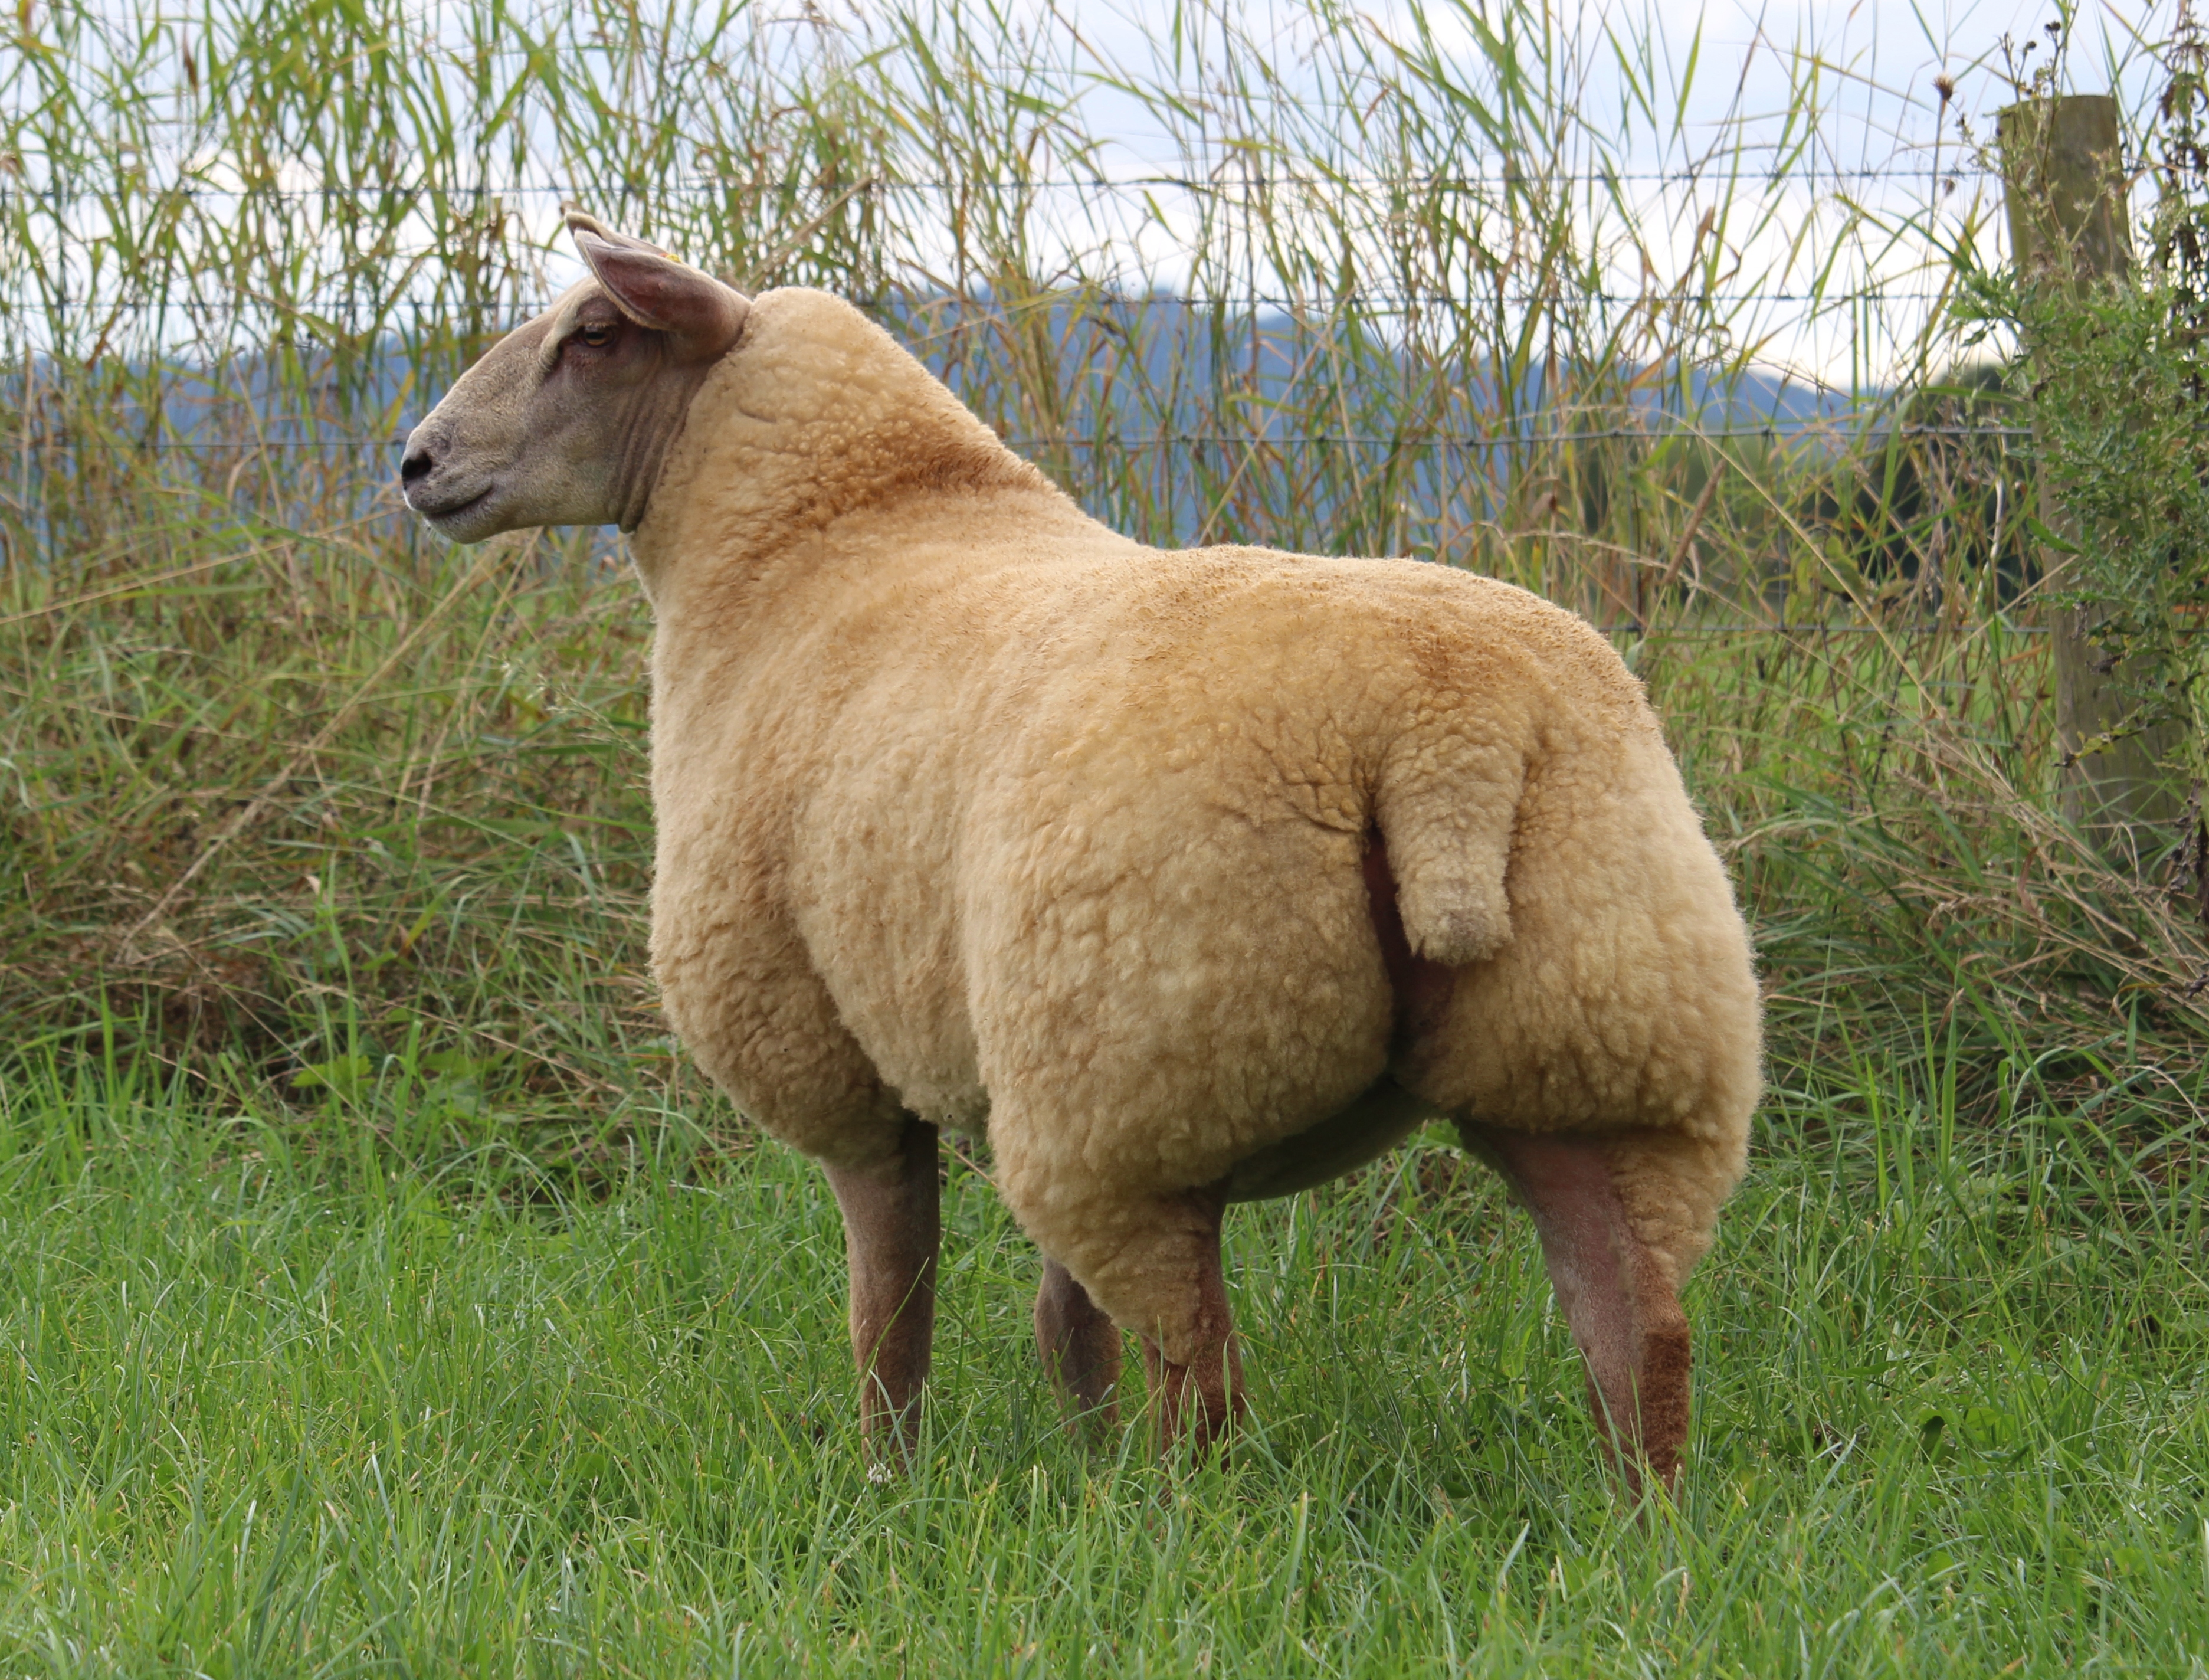 Lot No. 70 ewe lamb – 16TG00570 ARR/ARR